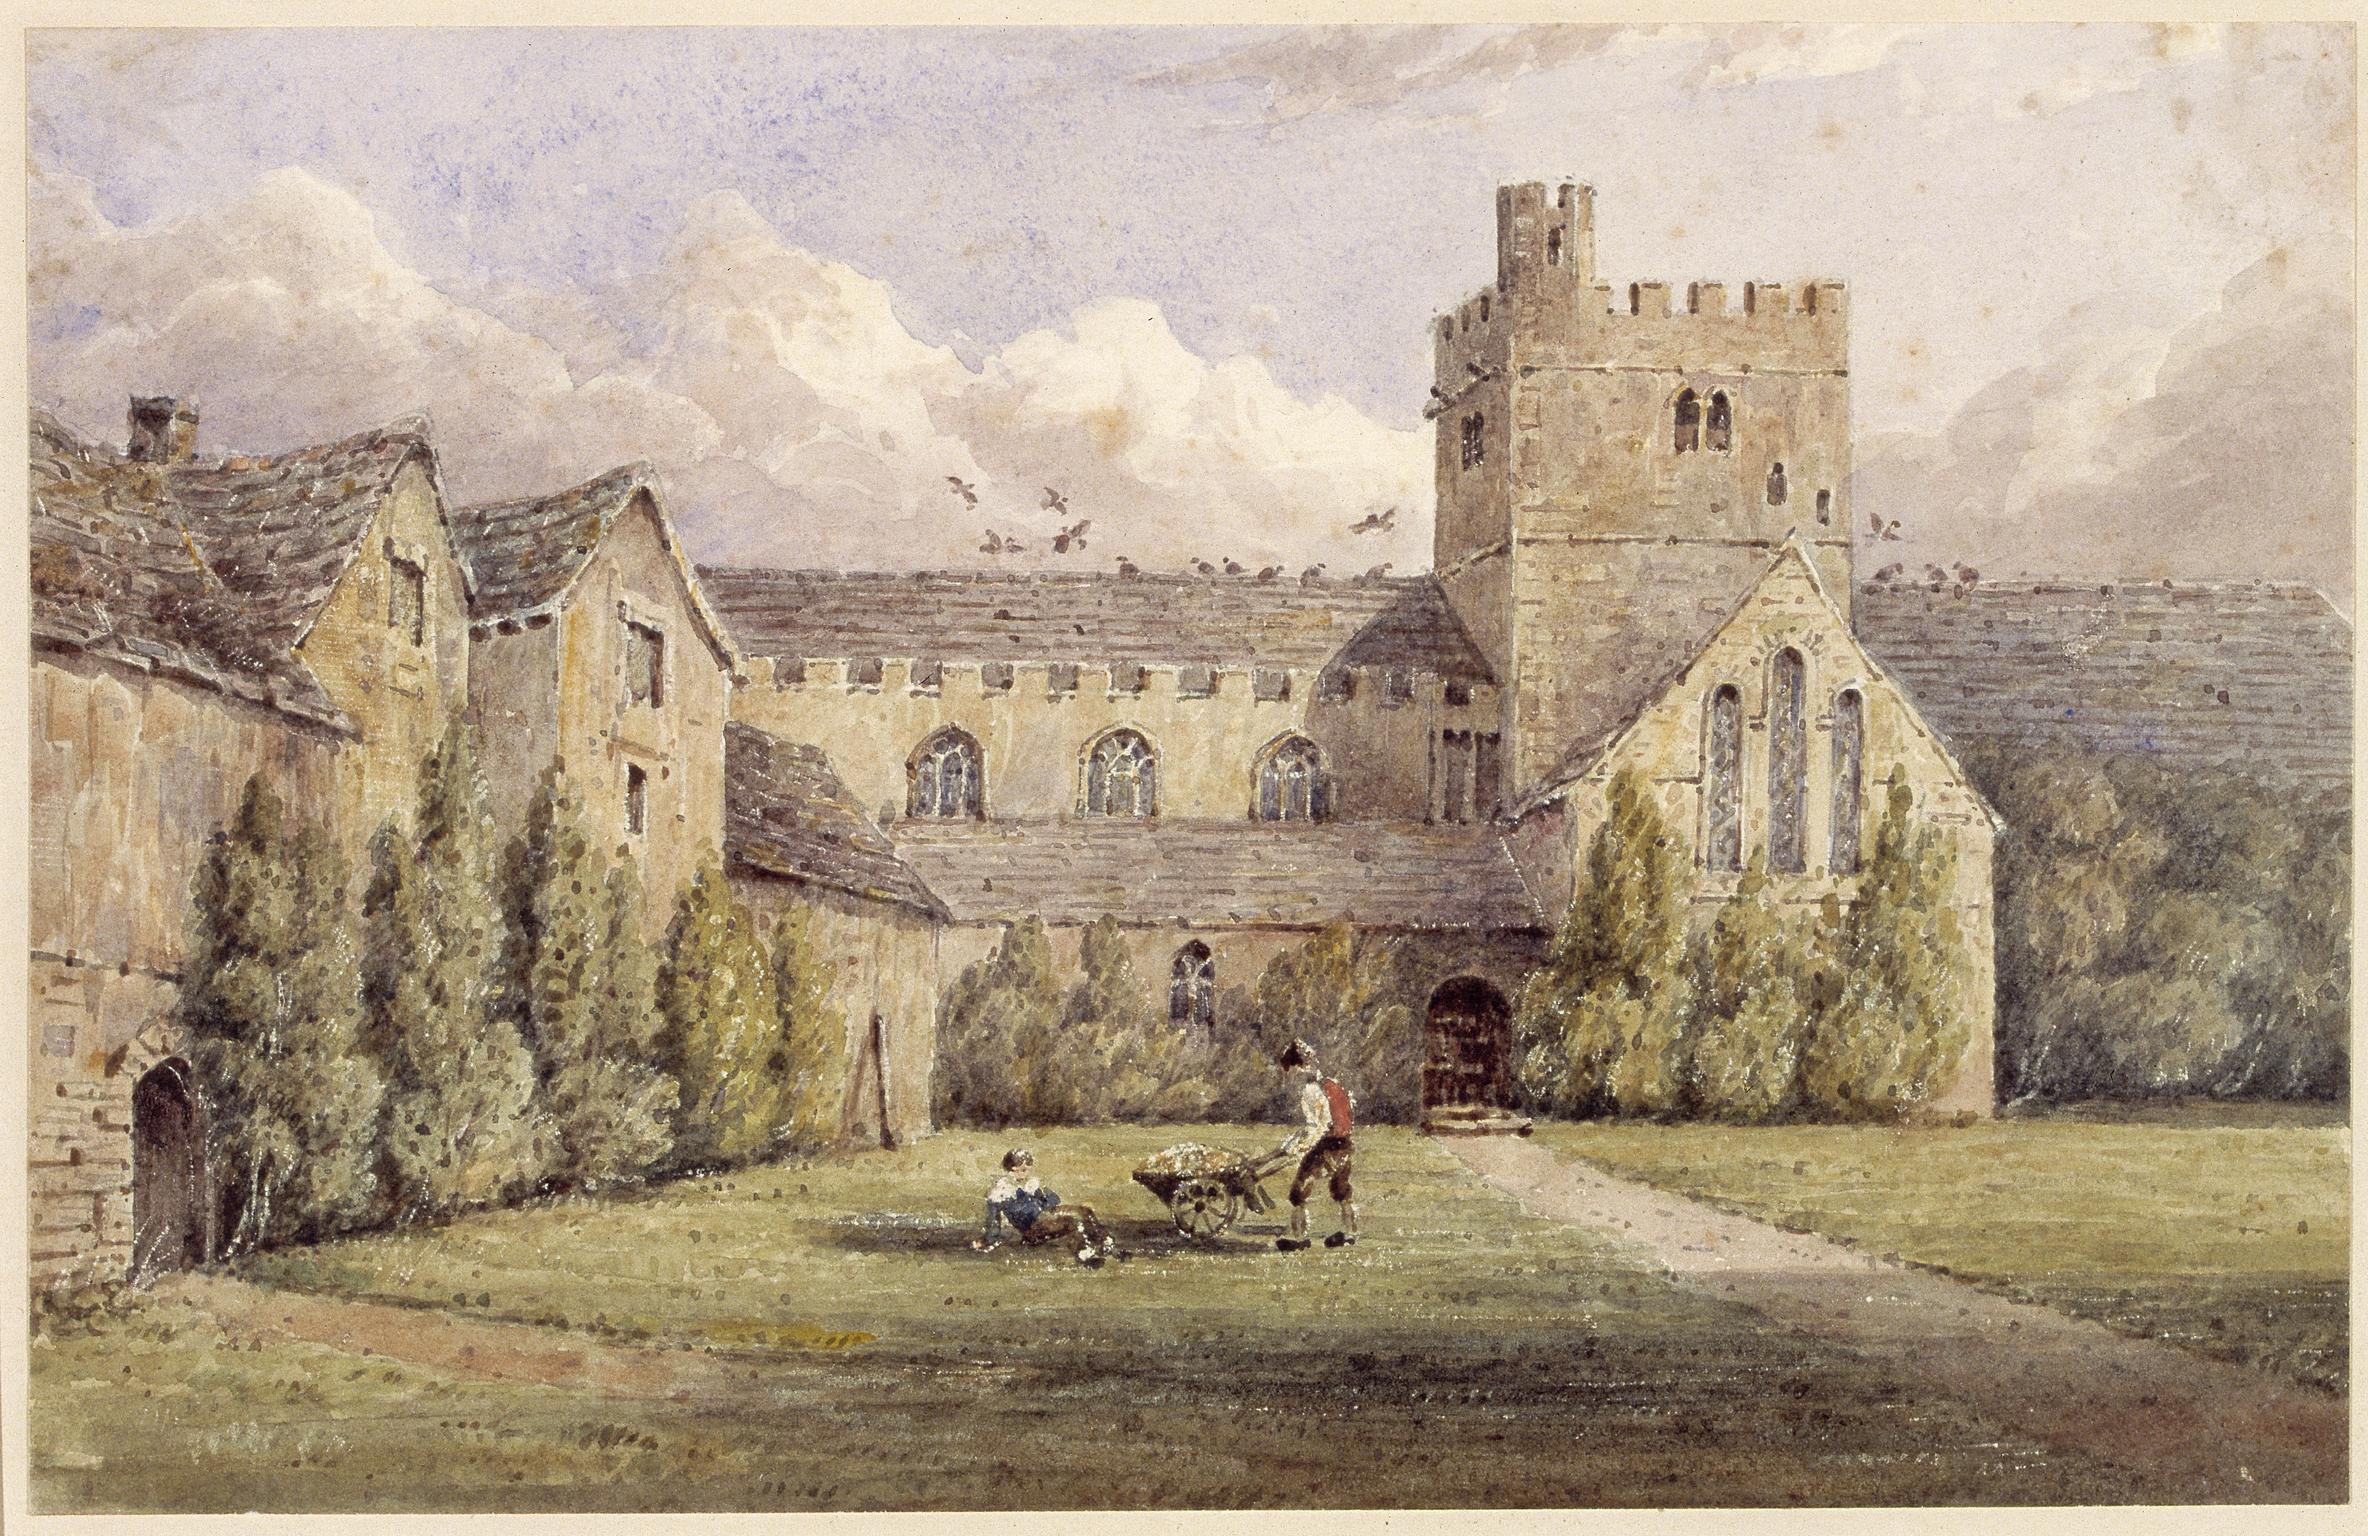 Brecon Priory